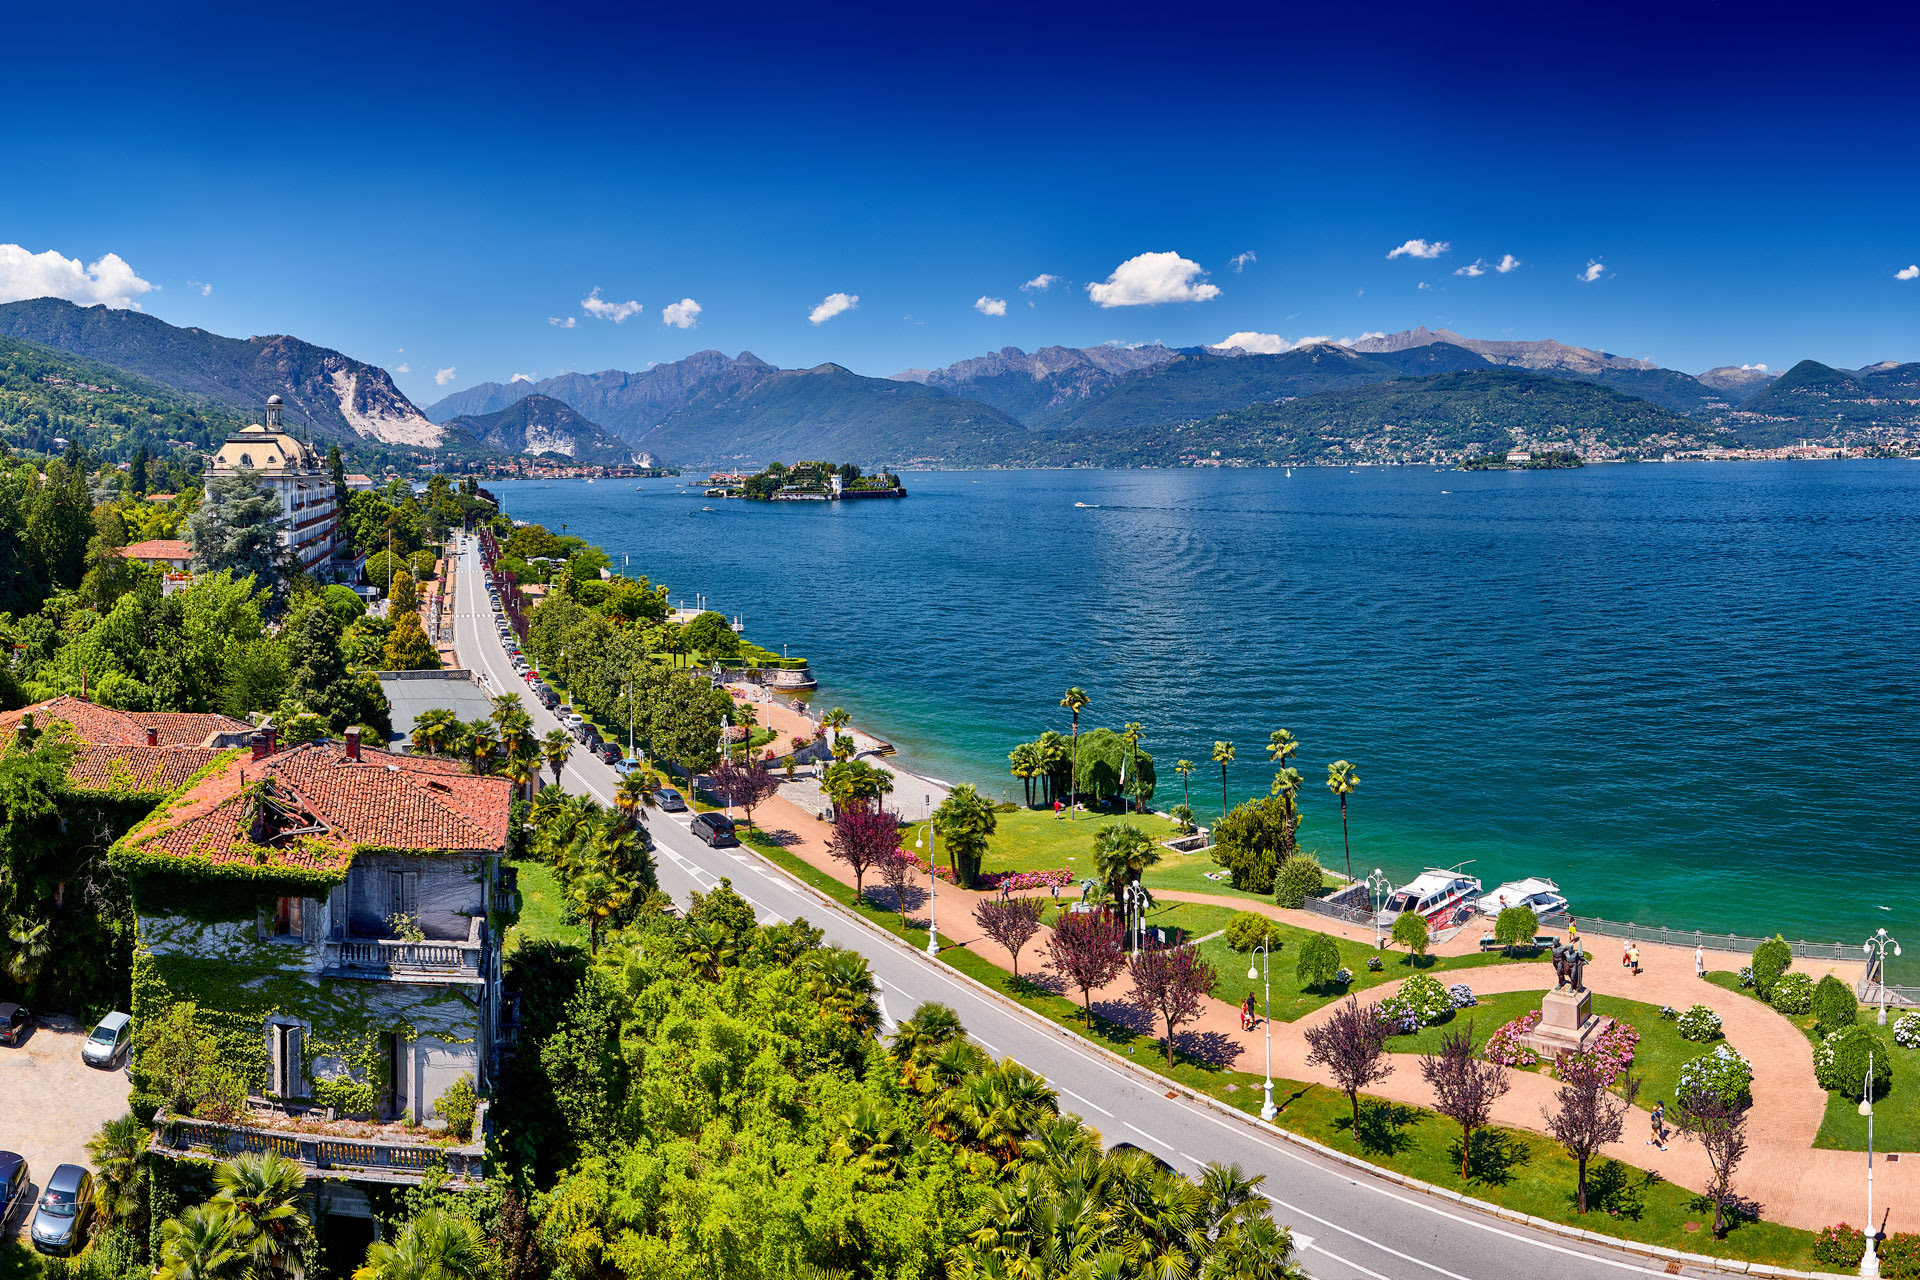 campinglagomaggiore - The Lake Maggiore Holidays Consortium